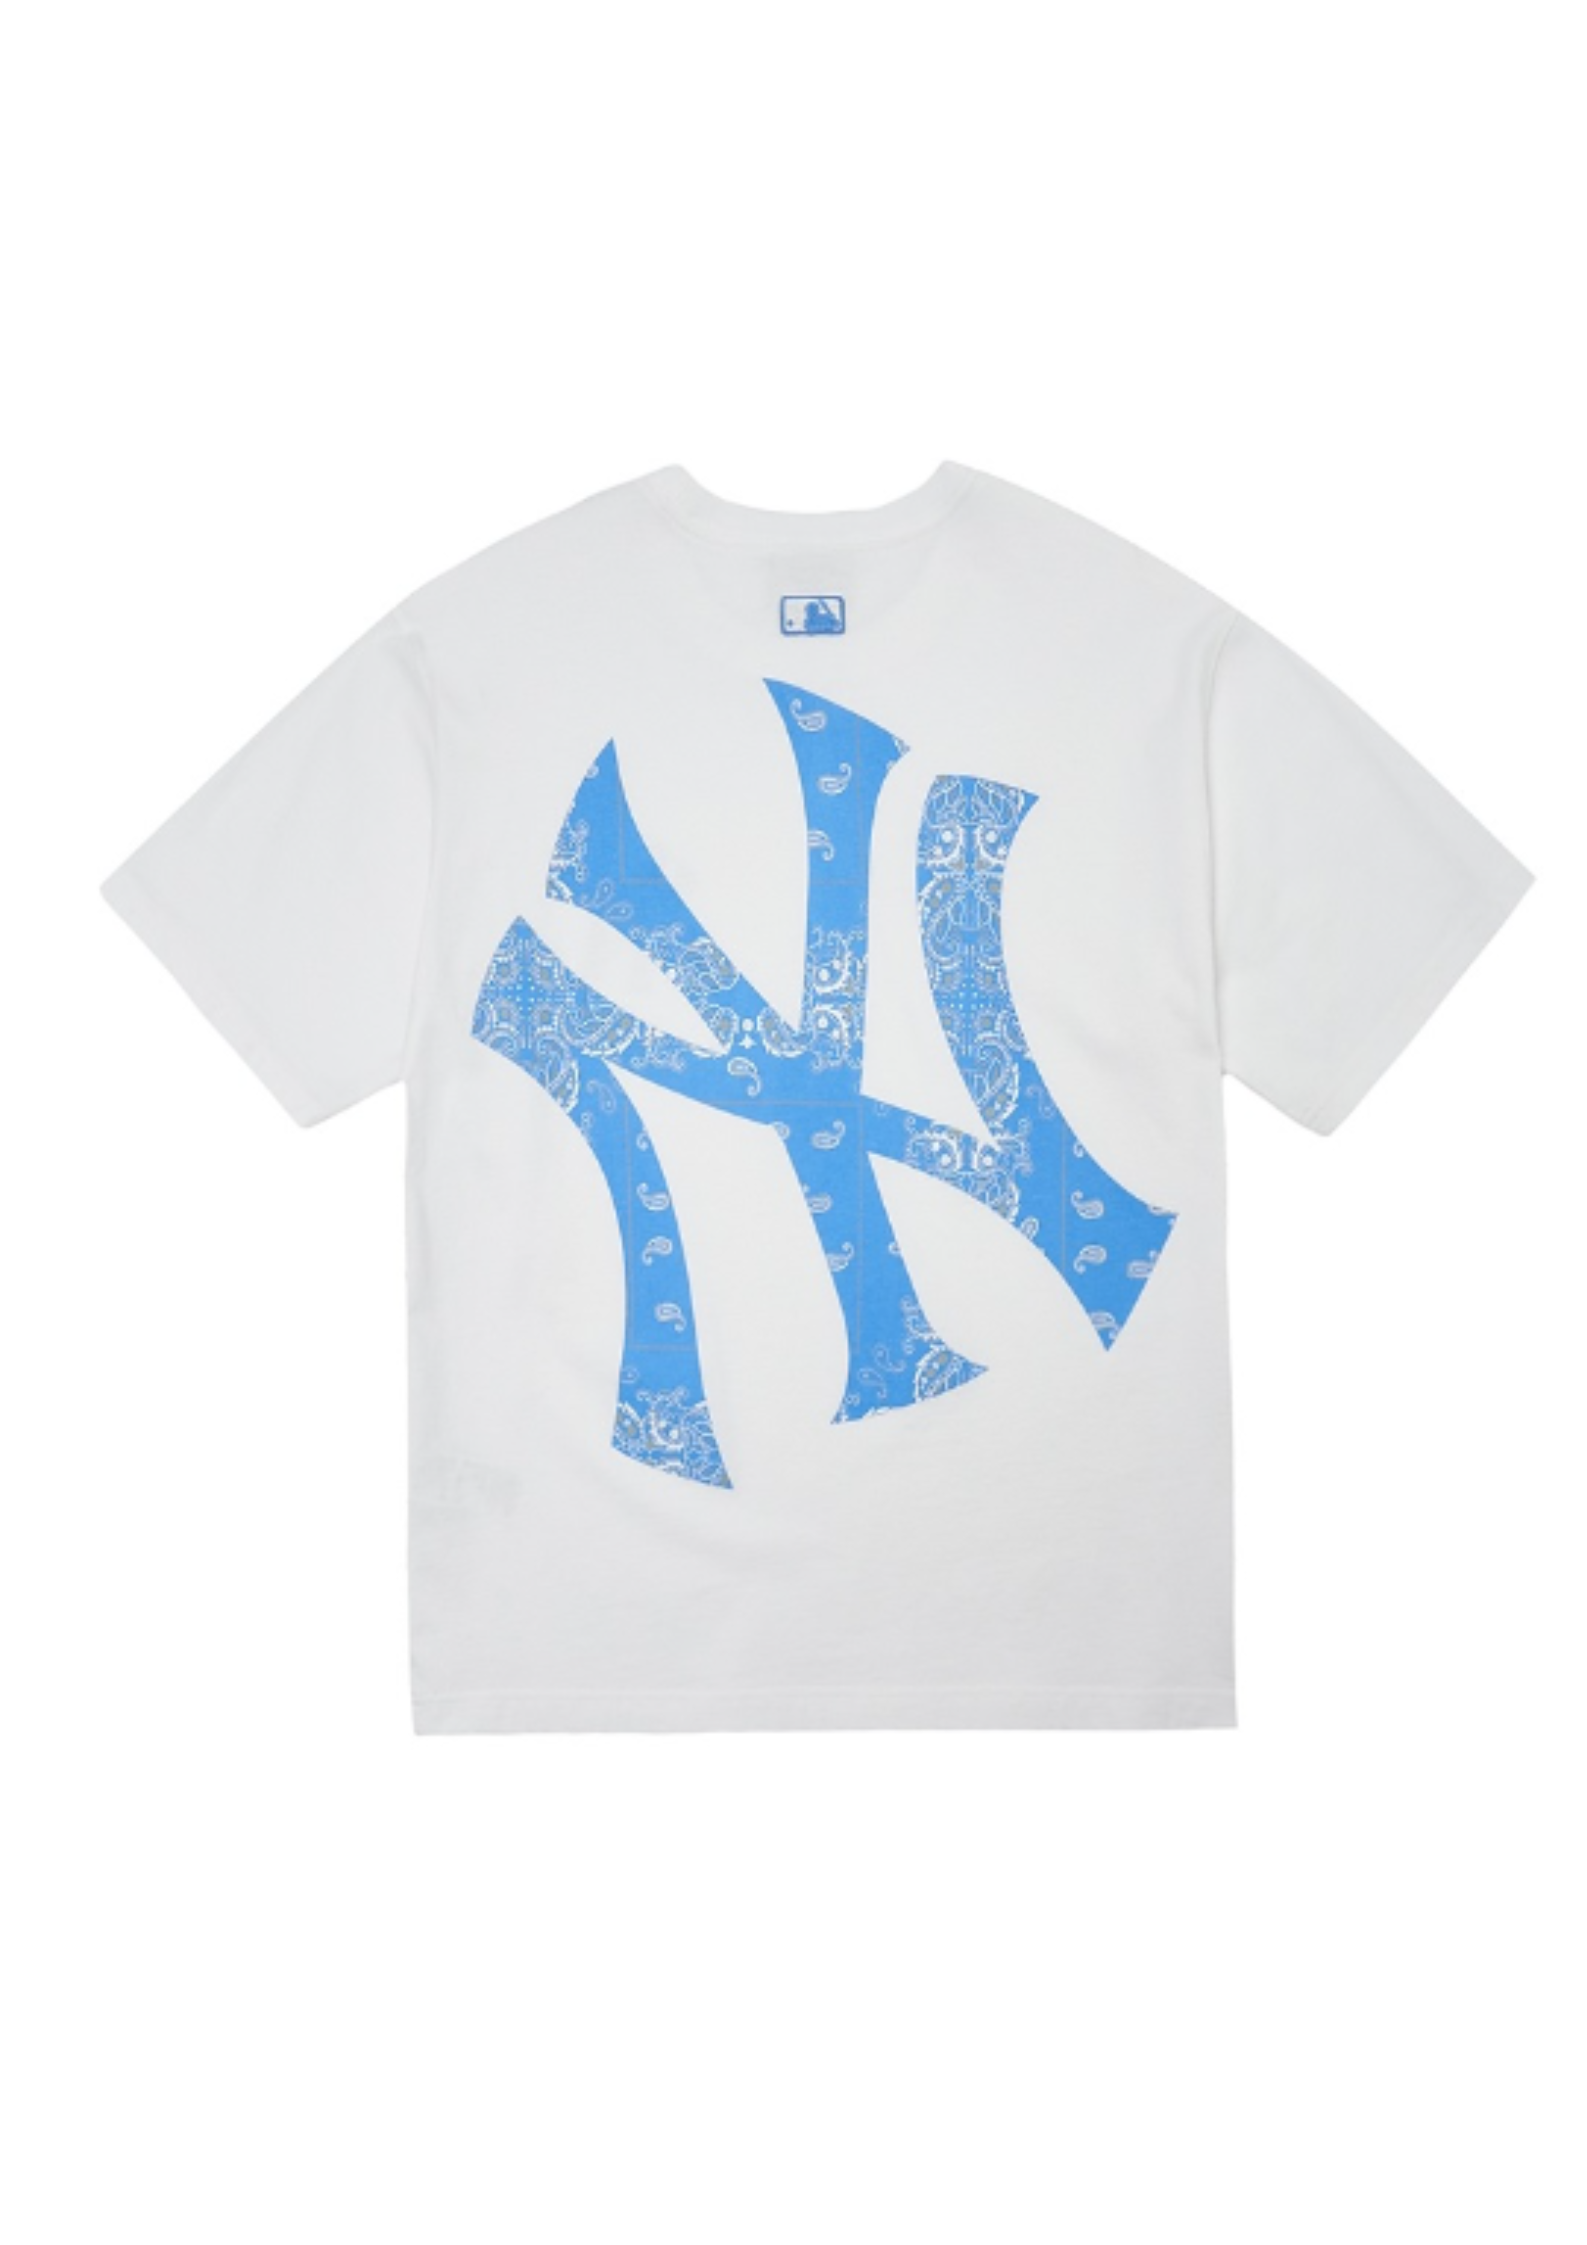 New Era MLB New York Yankees paisley print t-shirt in white